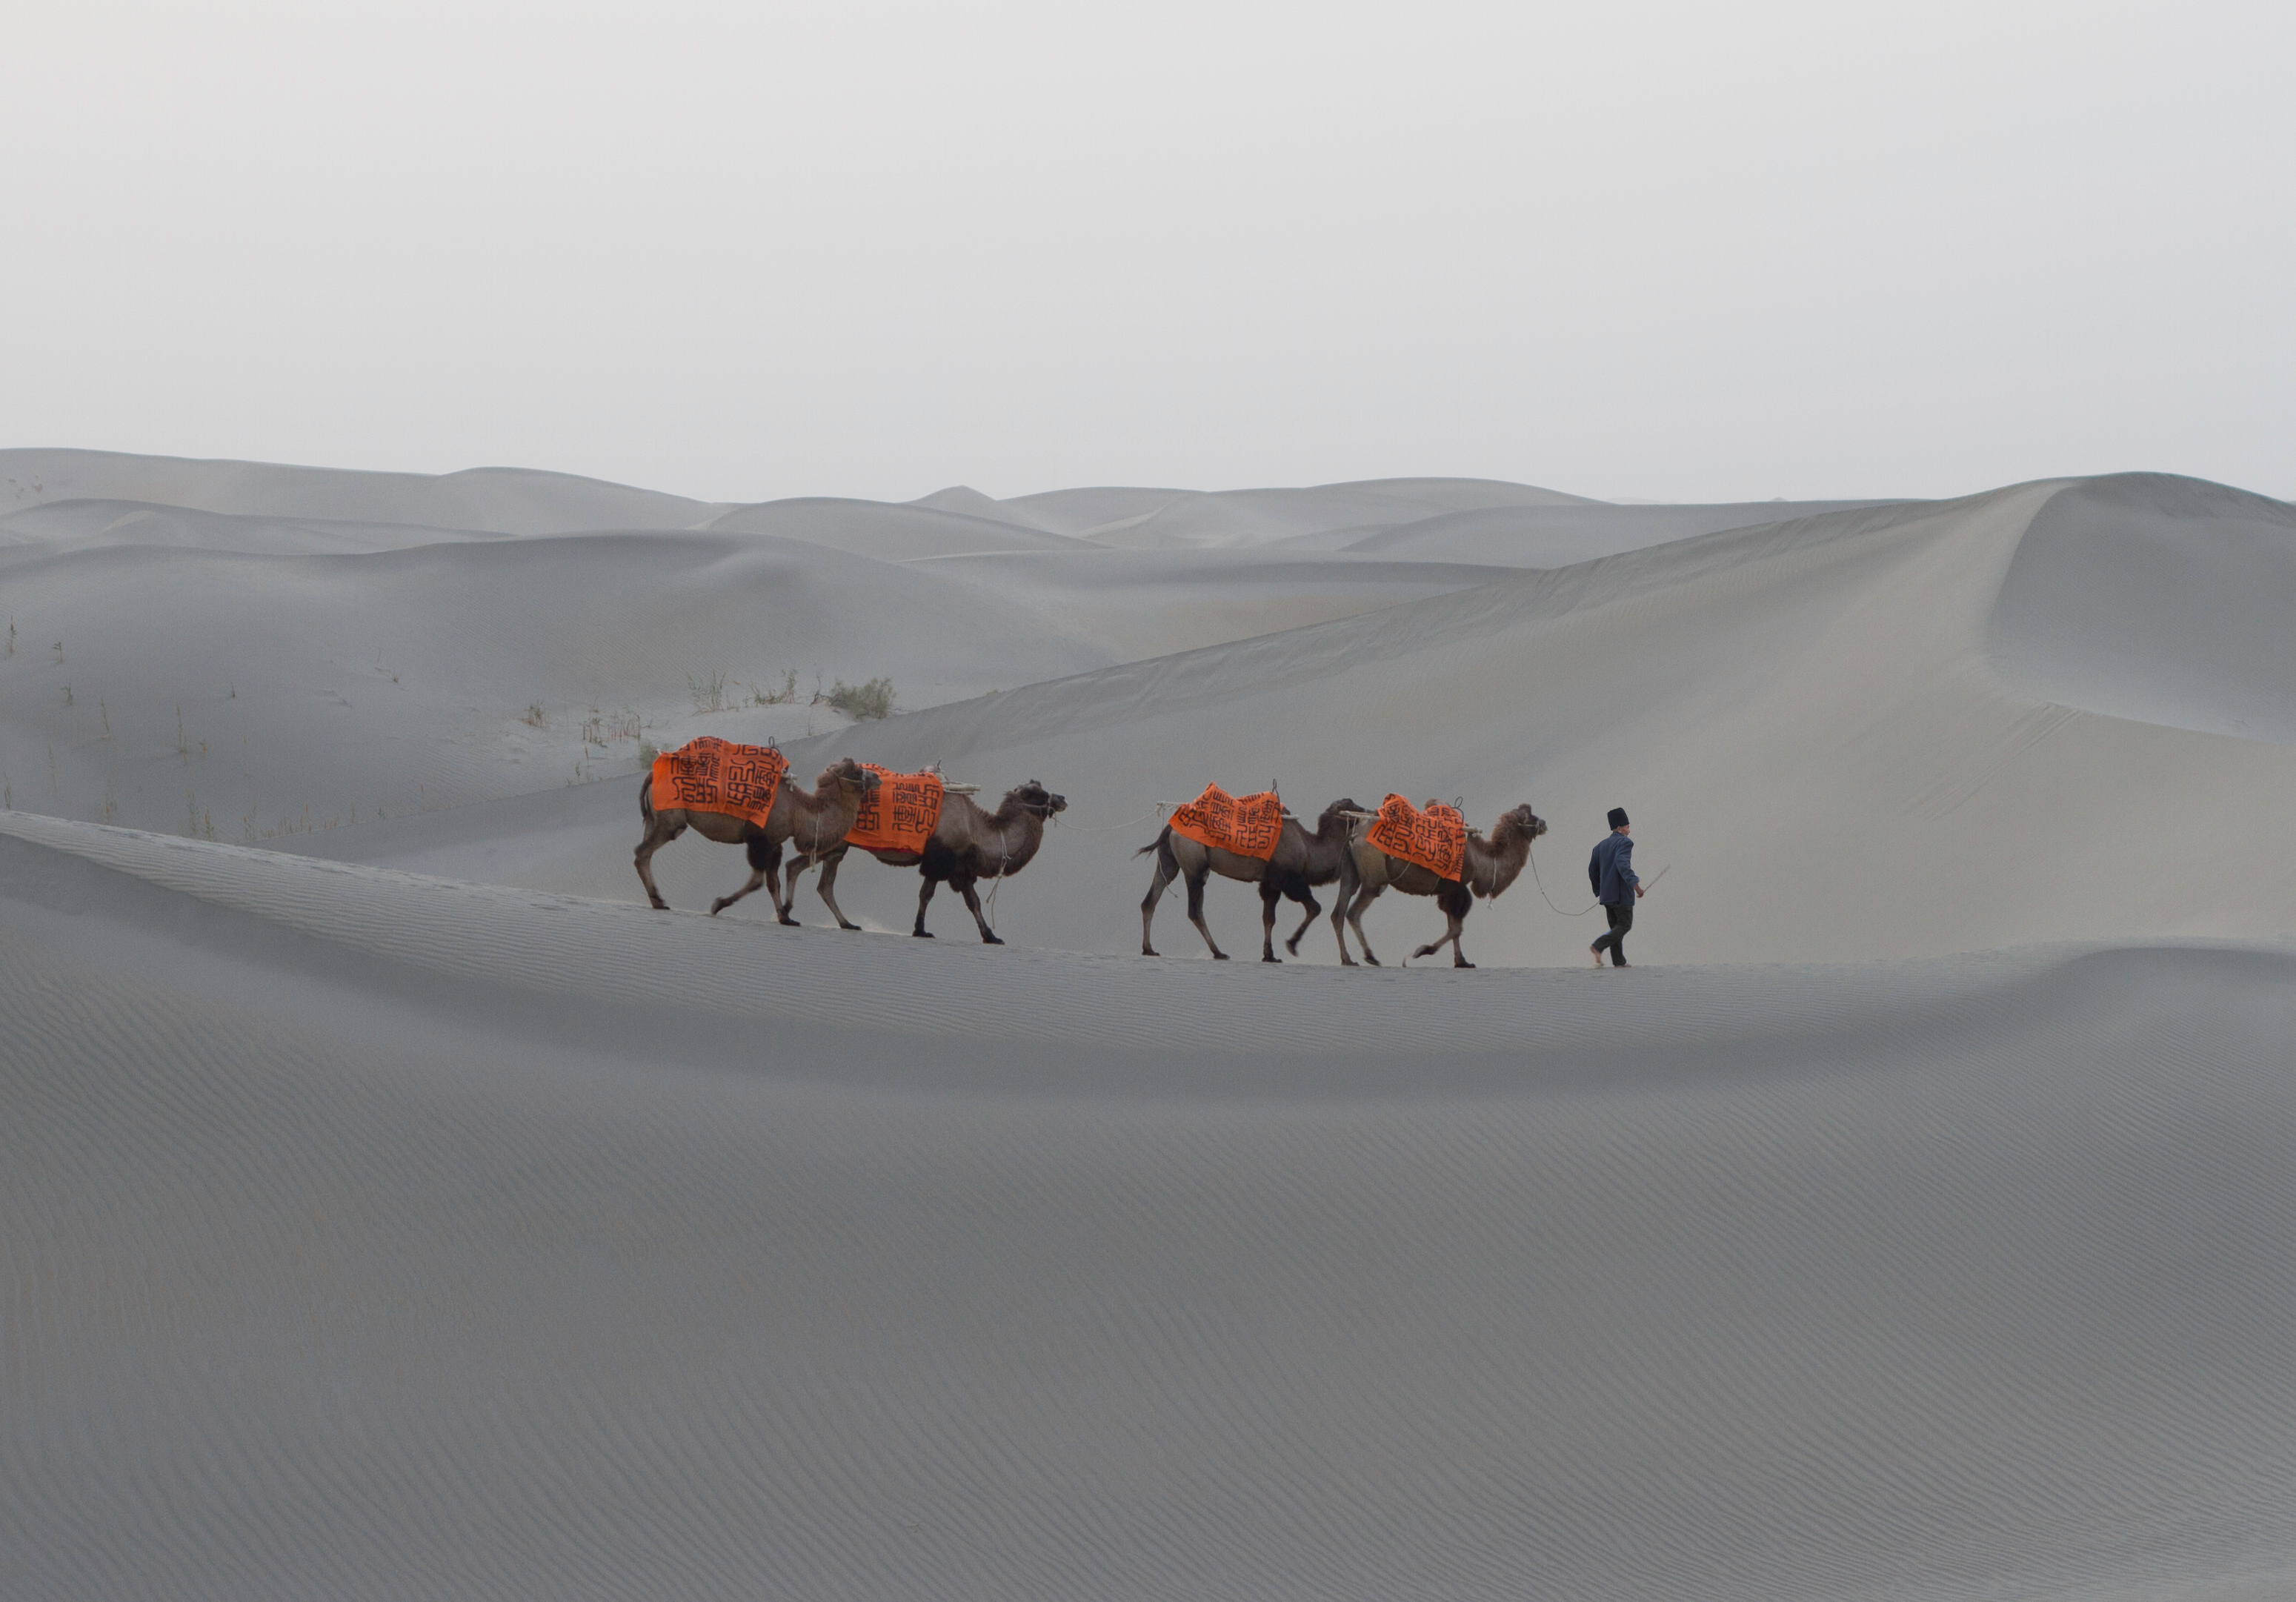 Phil Akashi's onsite art performance in the Taklamakan Desert